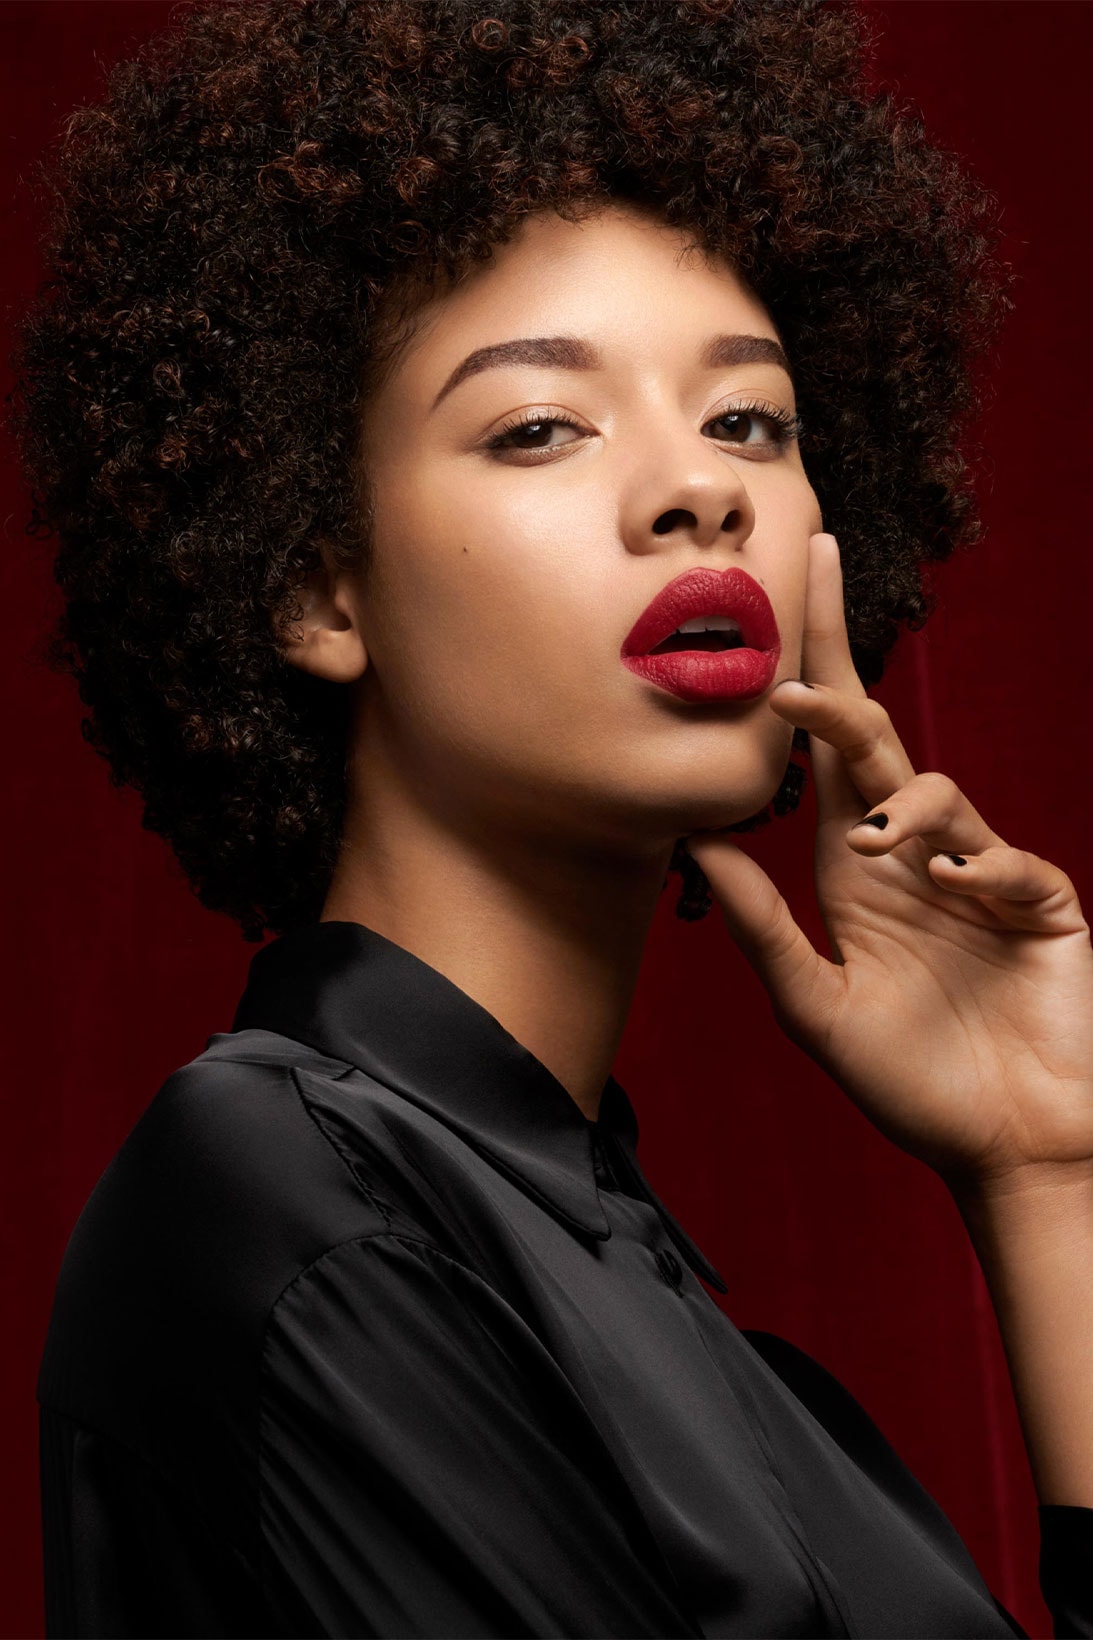 YSL Beauty “The Slim Velvet Radical” model deep red shade